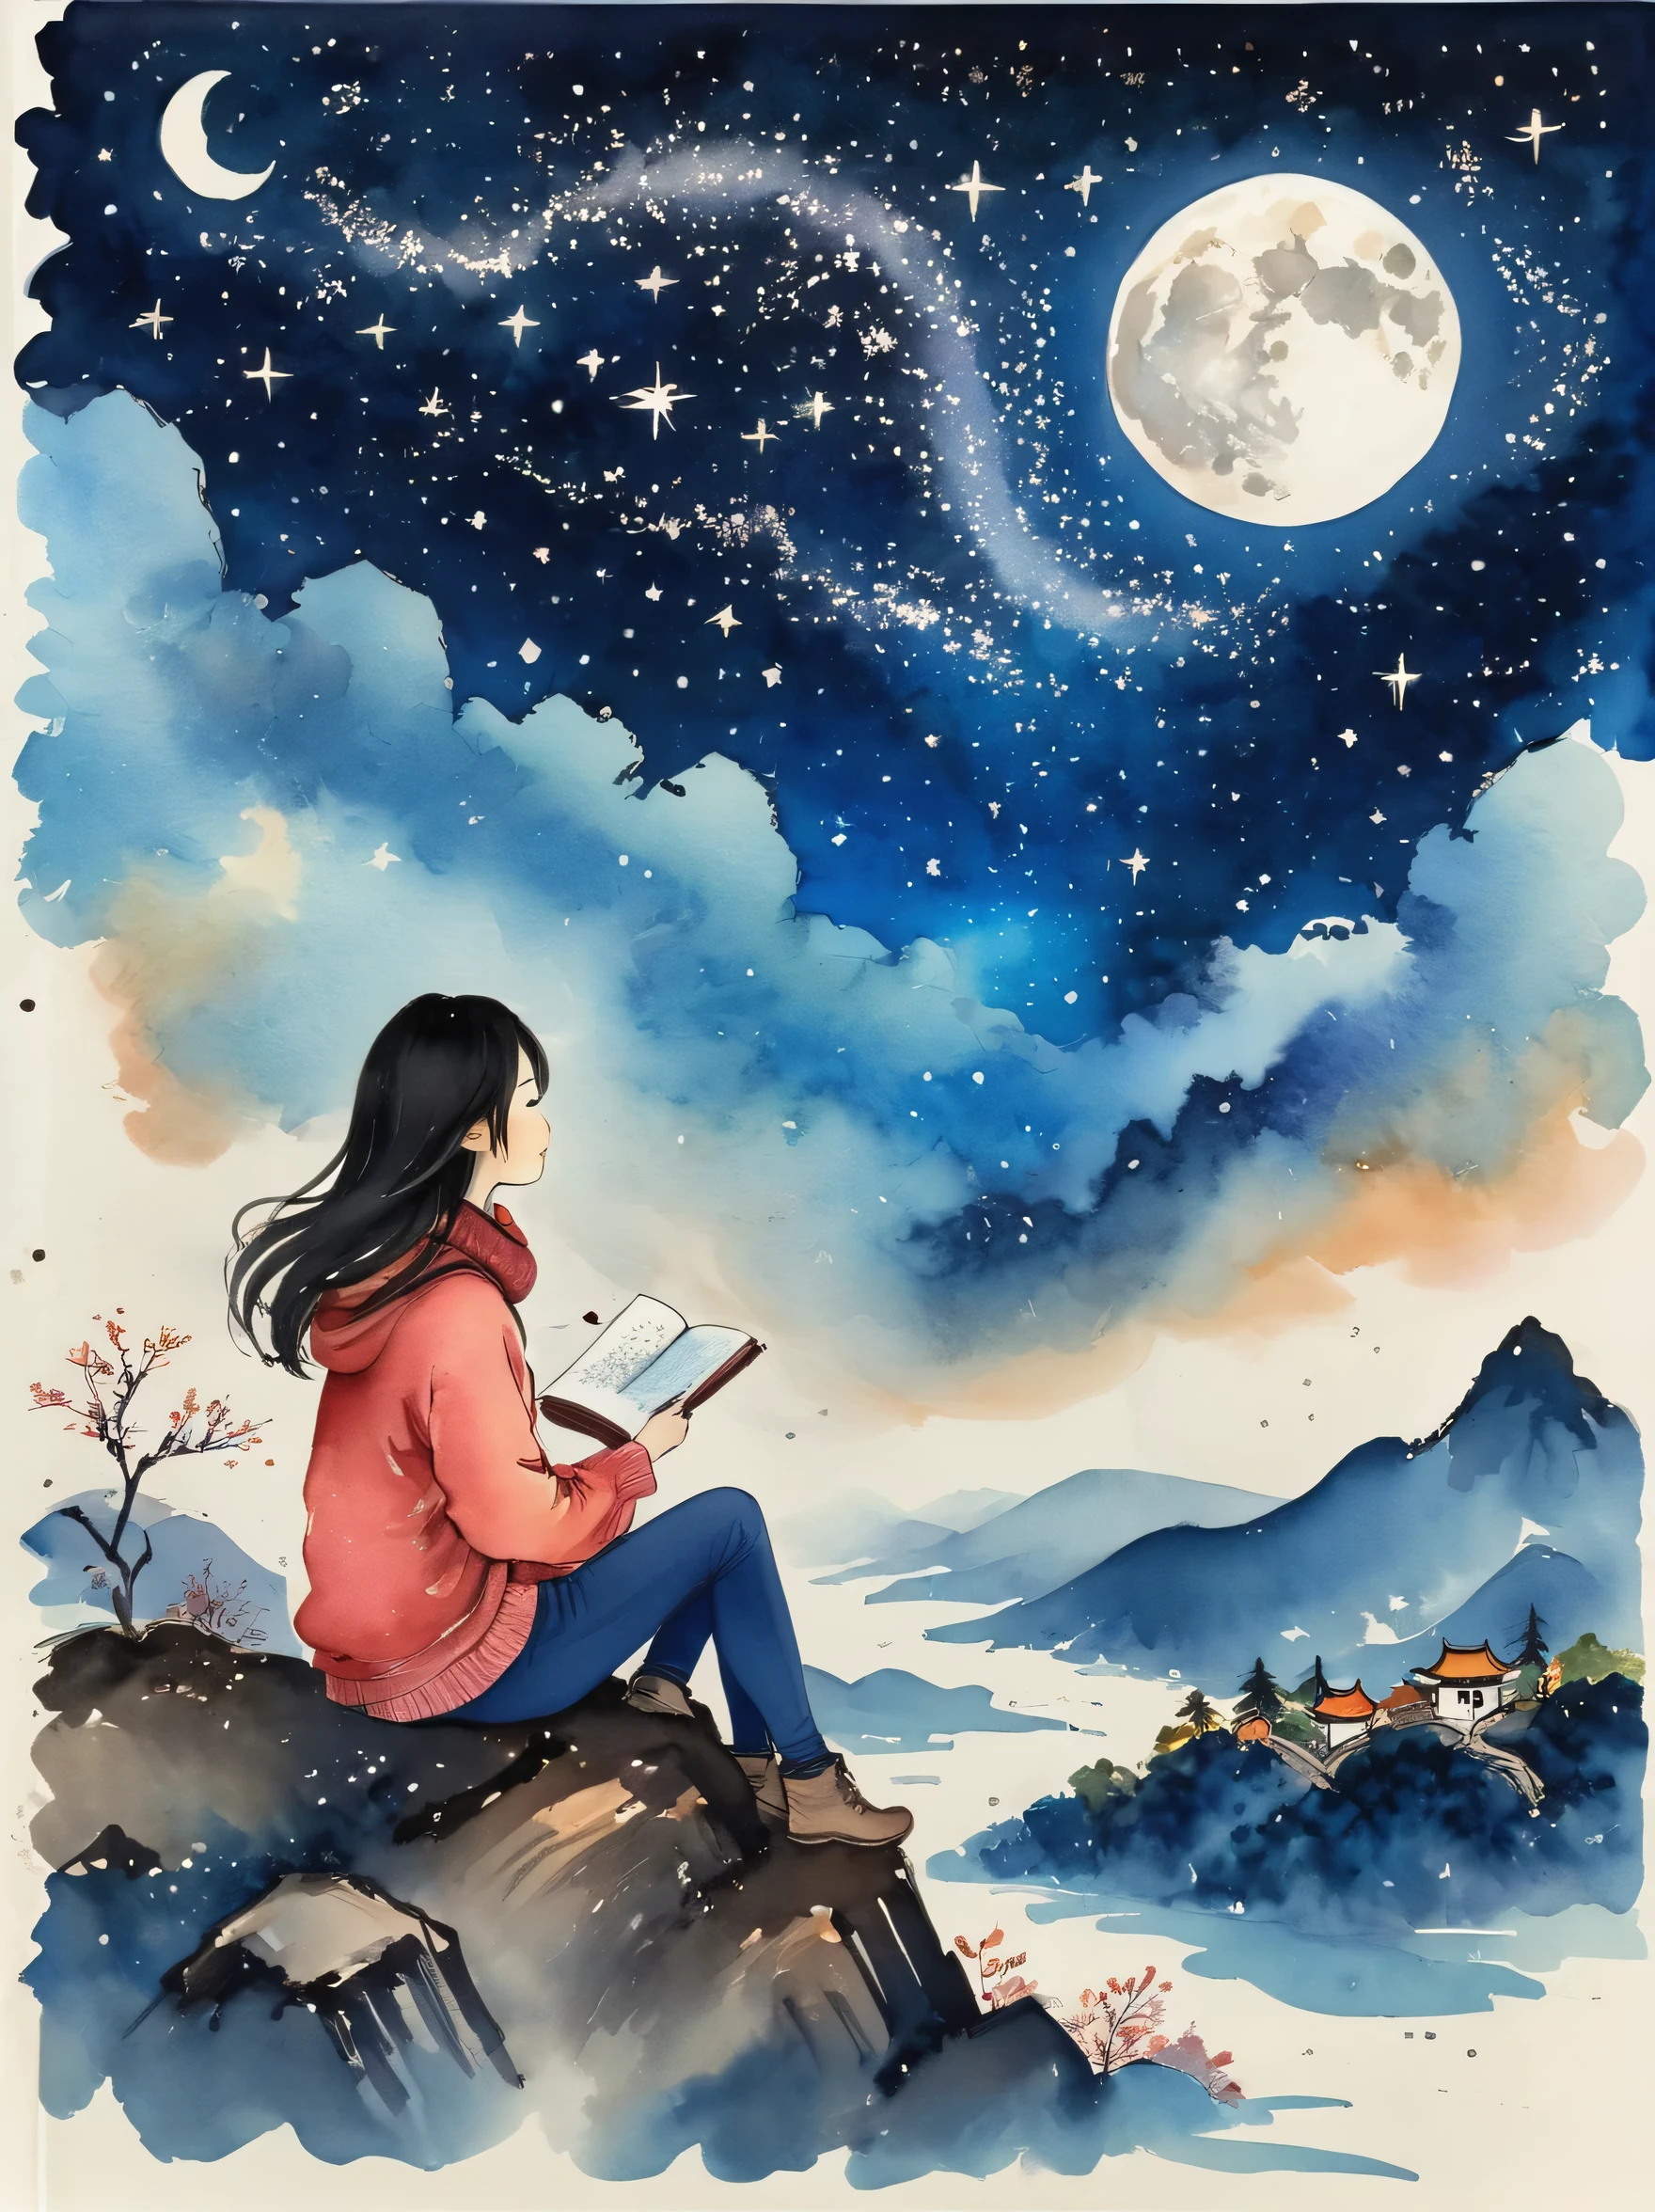 非常に詳細な，中国の水墨画，中国の夢の風景，(最高品質, 傑作:1.2), 少女が山の丘の上に座っている, 星を見つめる. 彼女は一人だった, しかし一人ではない. 彼女は上空の広大な宇宙とのつながりを感じた. 彼女は暖かいセーターとスカーフを着ています, ホットチョコレートを手に. 彼女の隣にはスケッチブックと赤鉛筆が置いてある, しかし彼女は夜空に魅了されすぎている，できる&#39;何も描かない. 彼女は何を知りたいのか&#39;星の向こう側, そして彼女の世界における位置... 彼女は微笑んで目を閉じた, 平和と驚きを感じてください